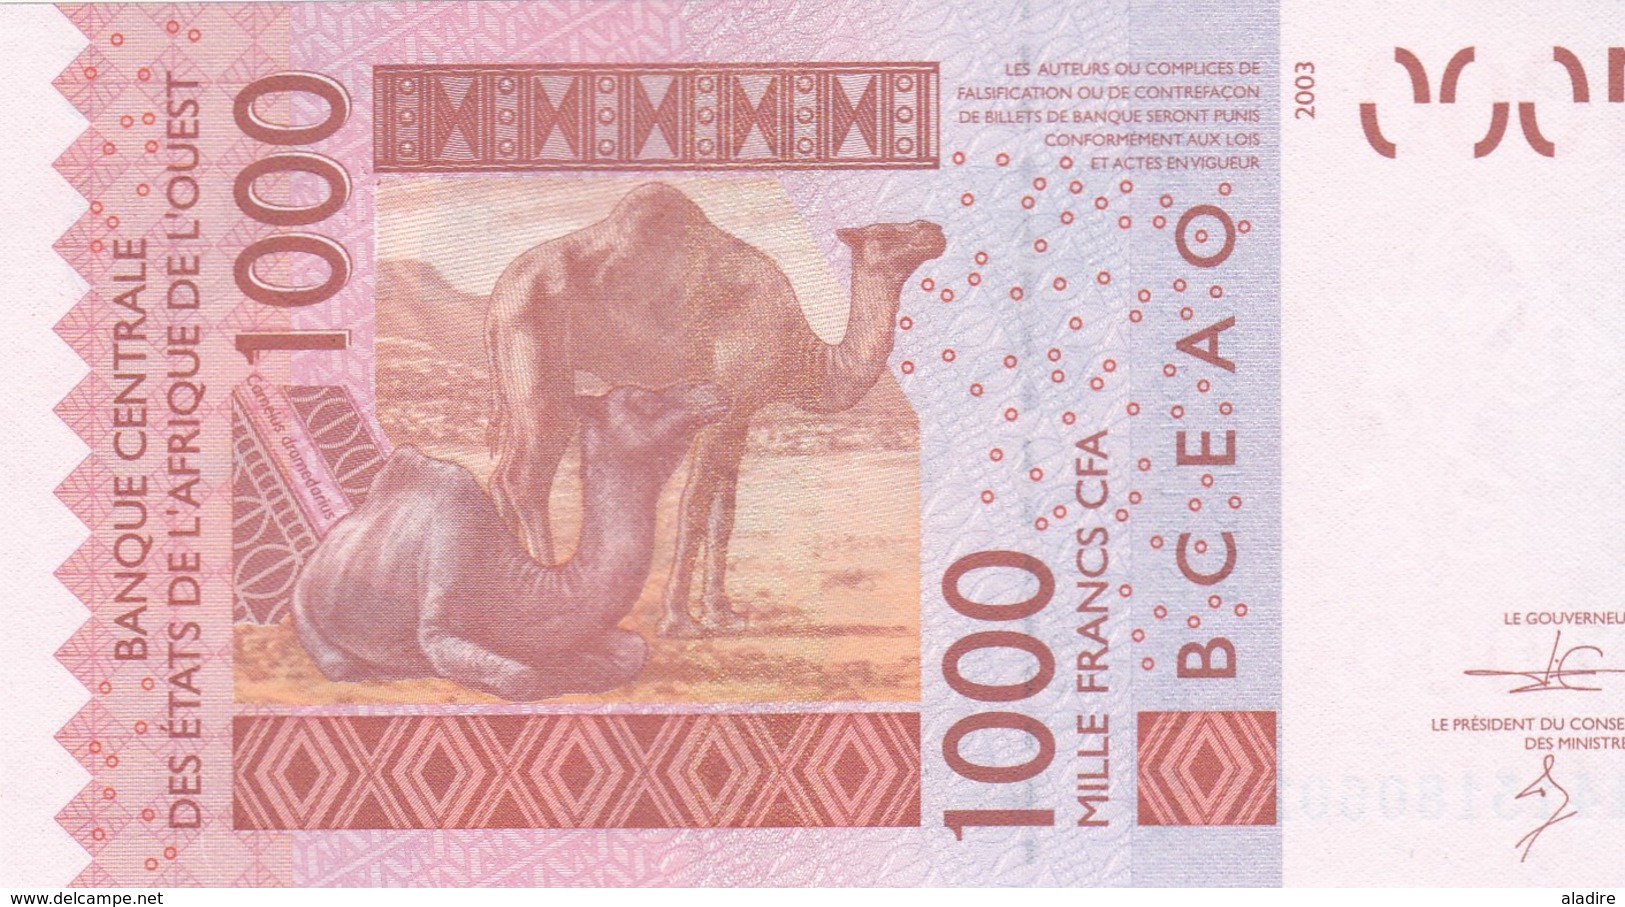 1000 Francs CFA - Banque Centrale Des états De L'Afrique De L'ouest - Neuf 2003 - Other - Africa